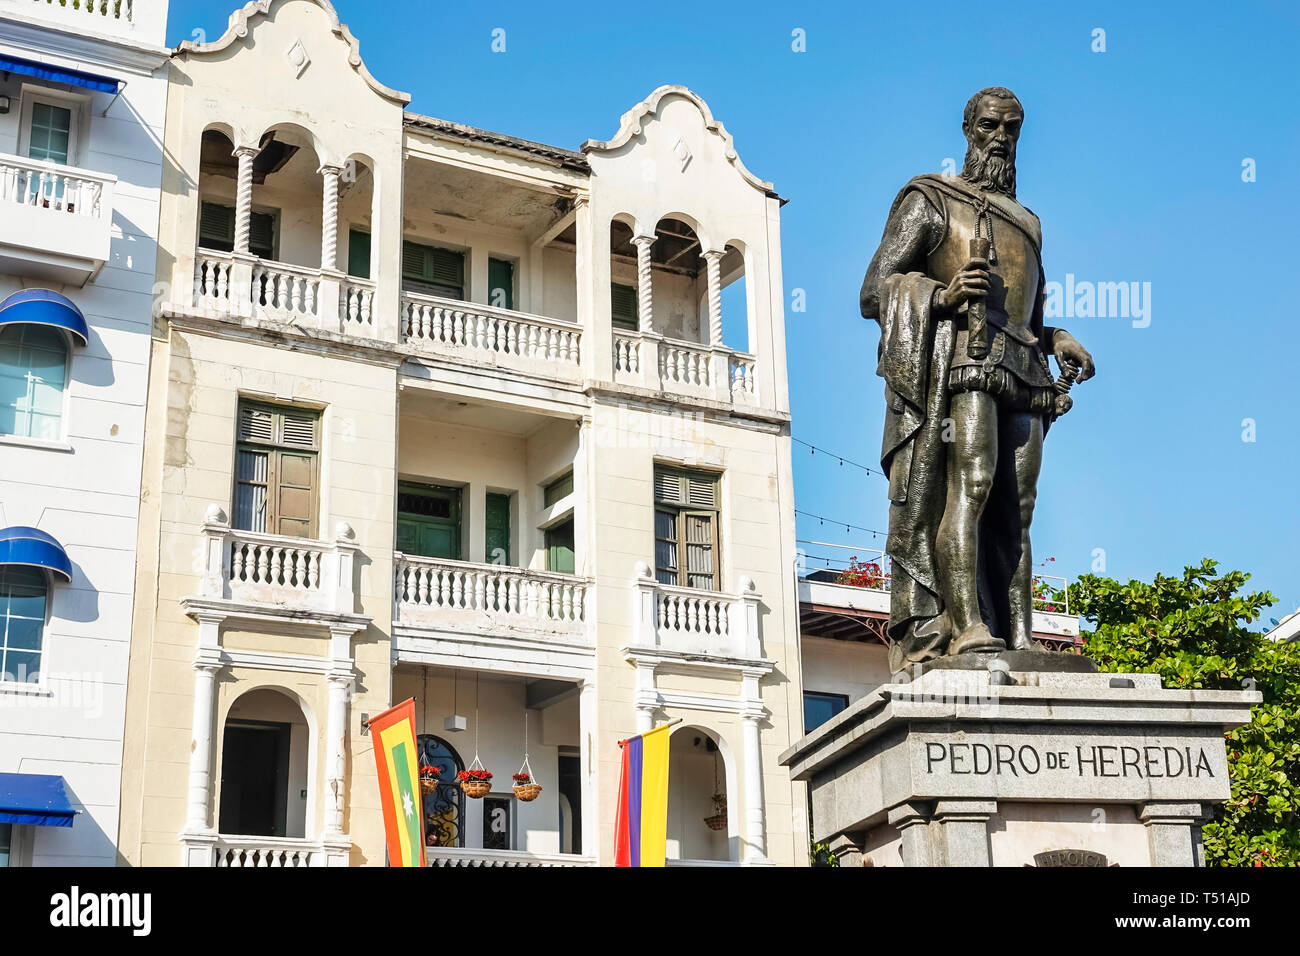 Cartagena Colombia,Plaza de los Coches,central plaza,monument,statue,Pedro de Heredia,city founder,Spanish conquistador,COL190123123 Stock Photo